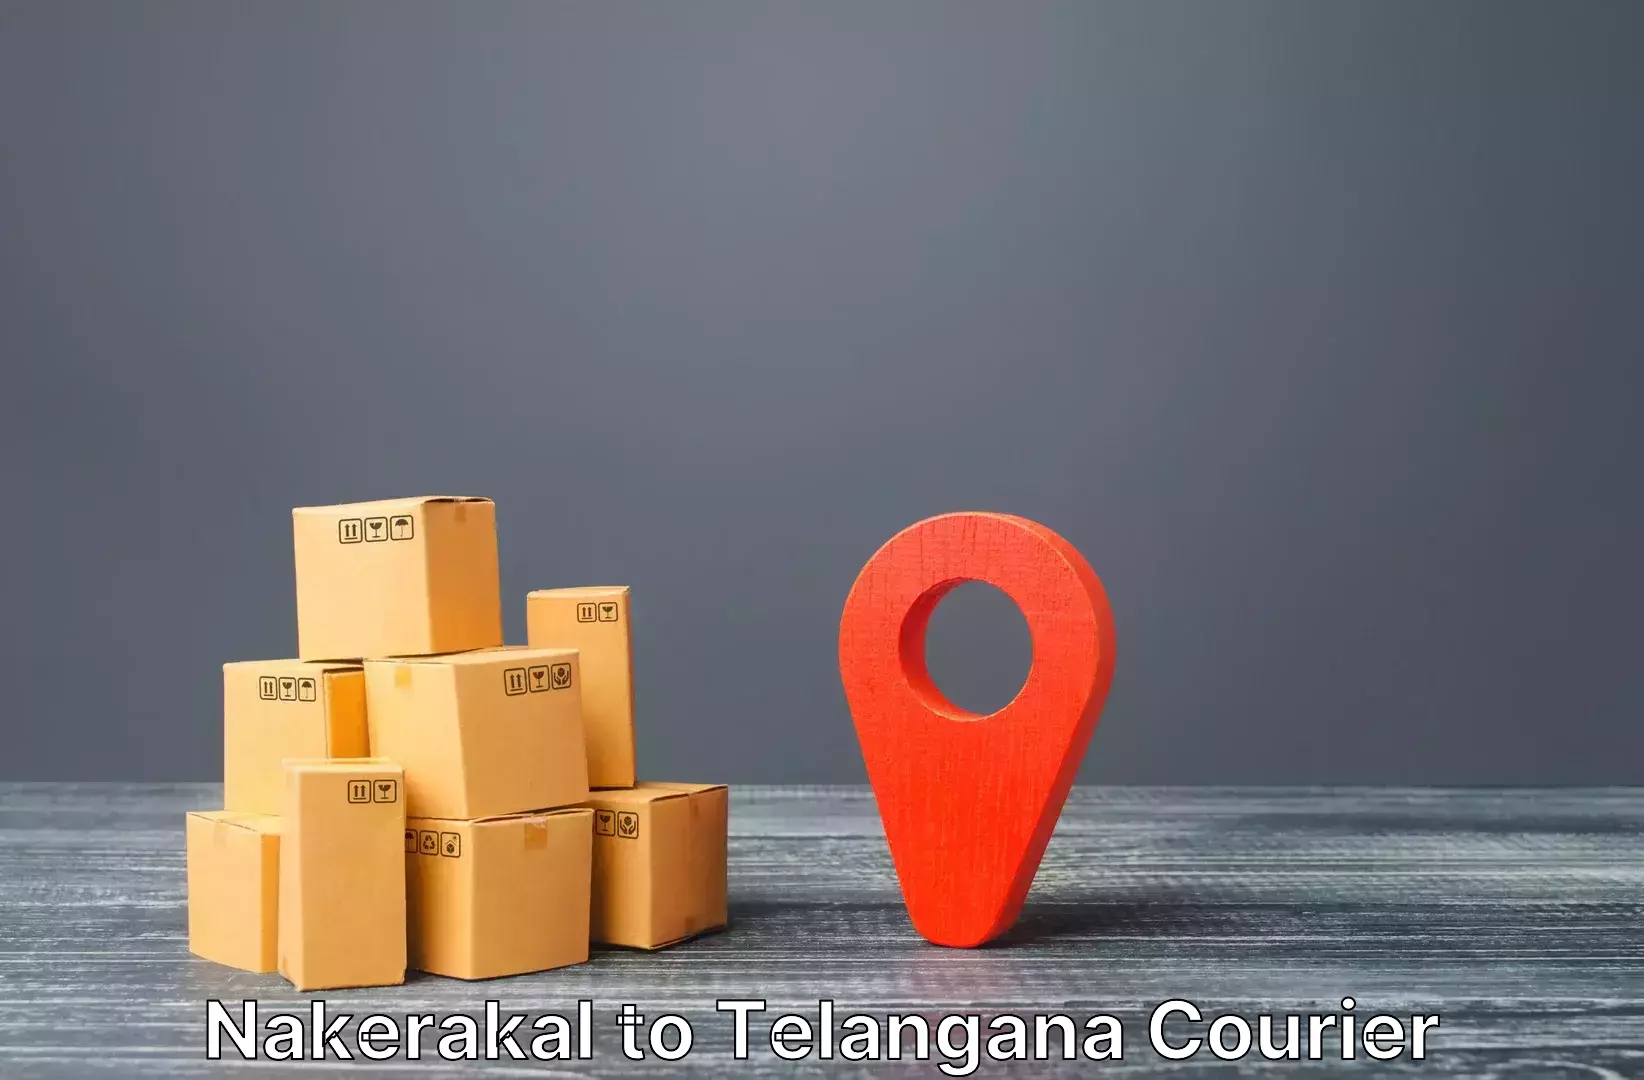 Luggage shipping rates Nakerakal to Ichoda